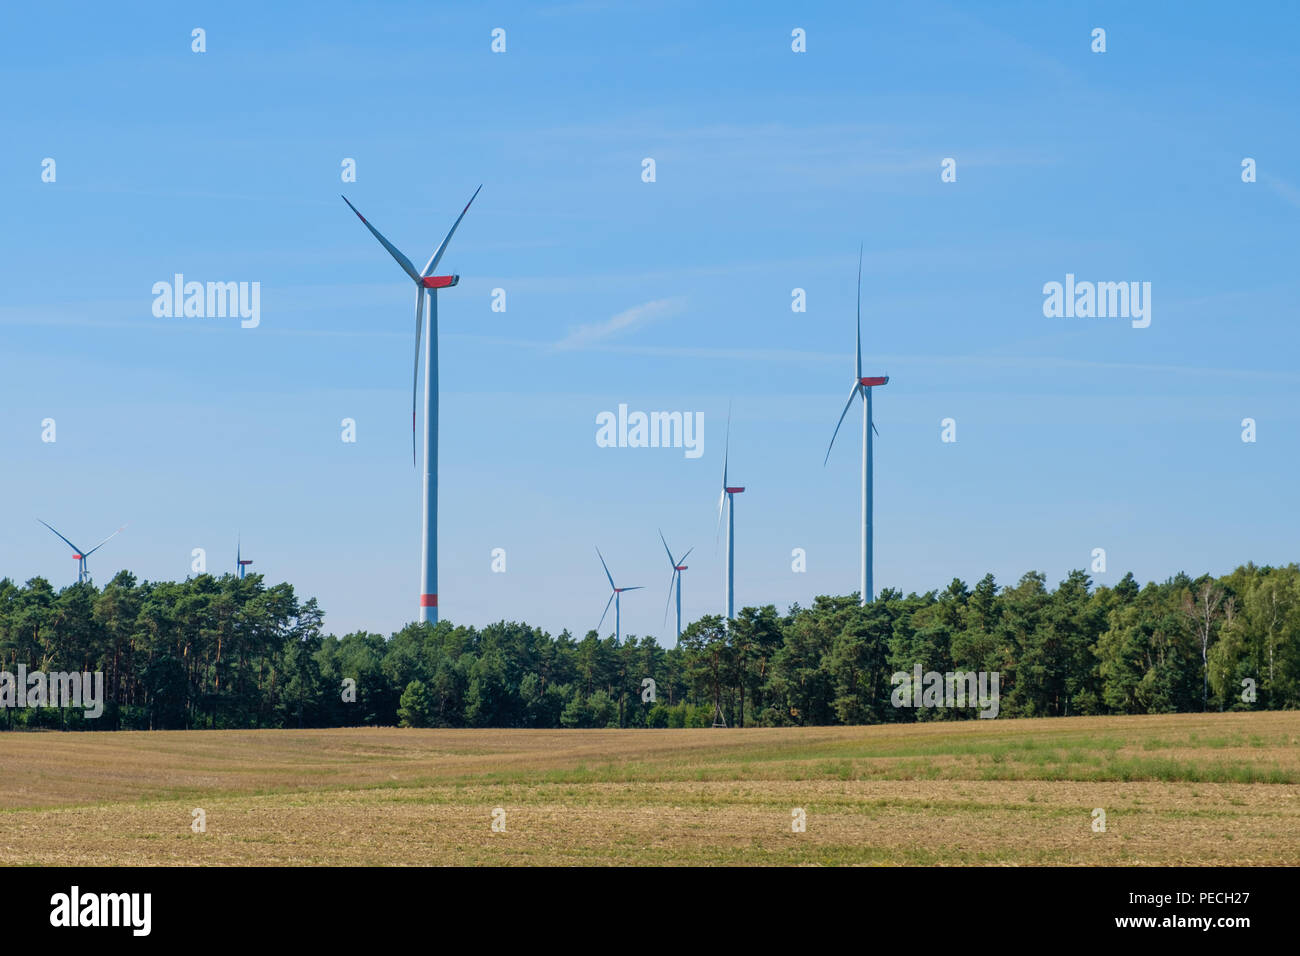 Windenergieanlagen/Windmühlen in ländlichen Landschaft - Erneuerbare Energien Stockfoto